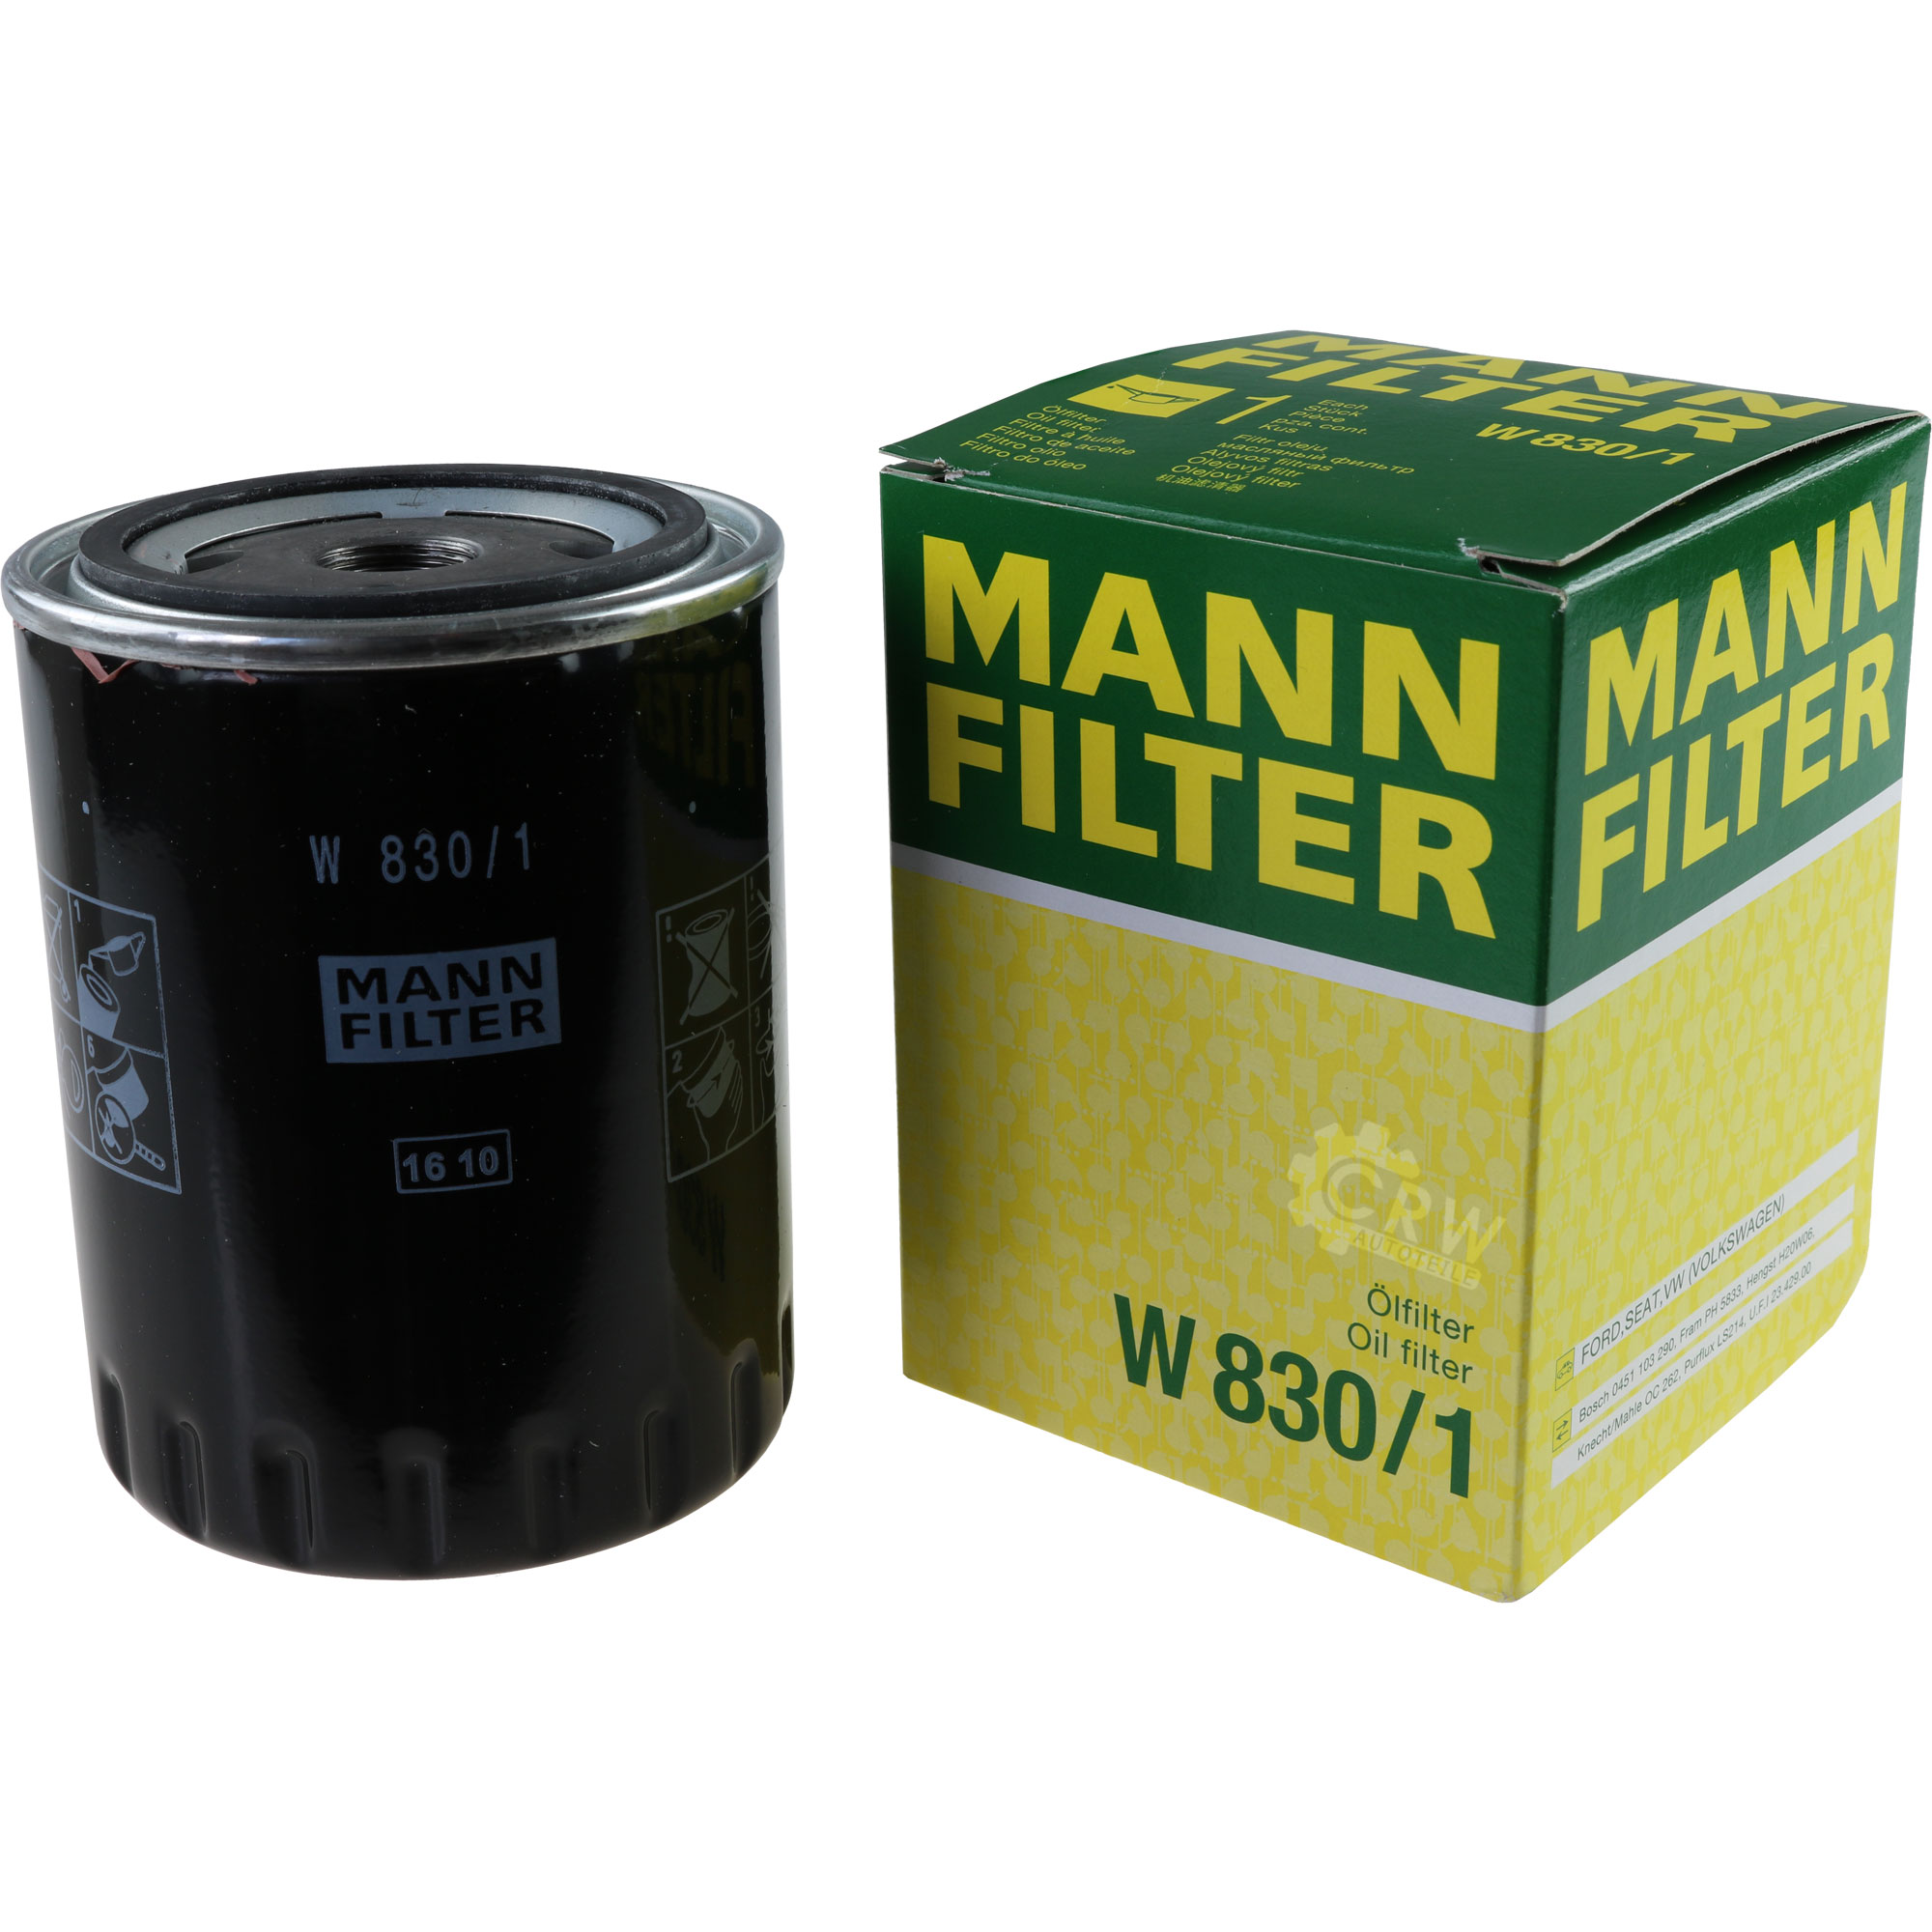 MANN-FILTER Ölfilter W 830/1 Oil Filter